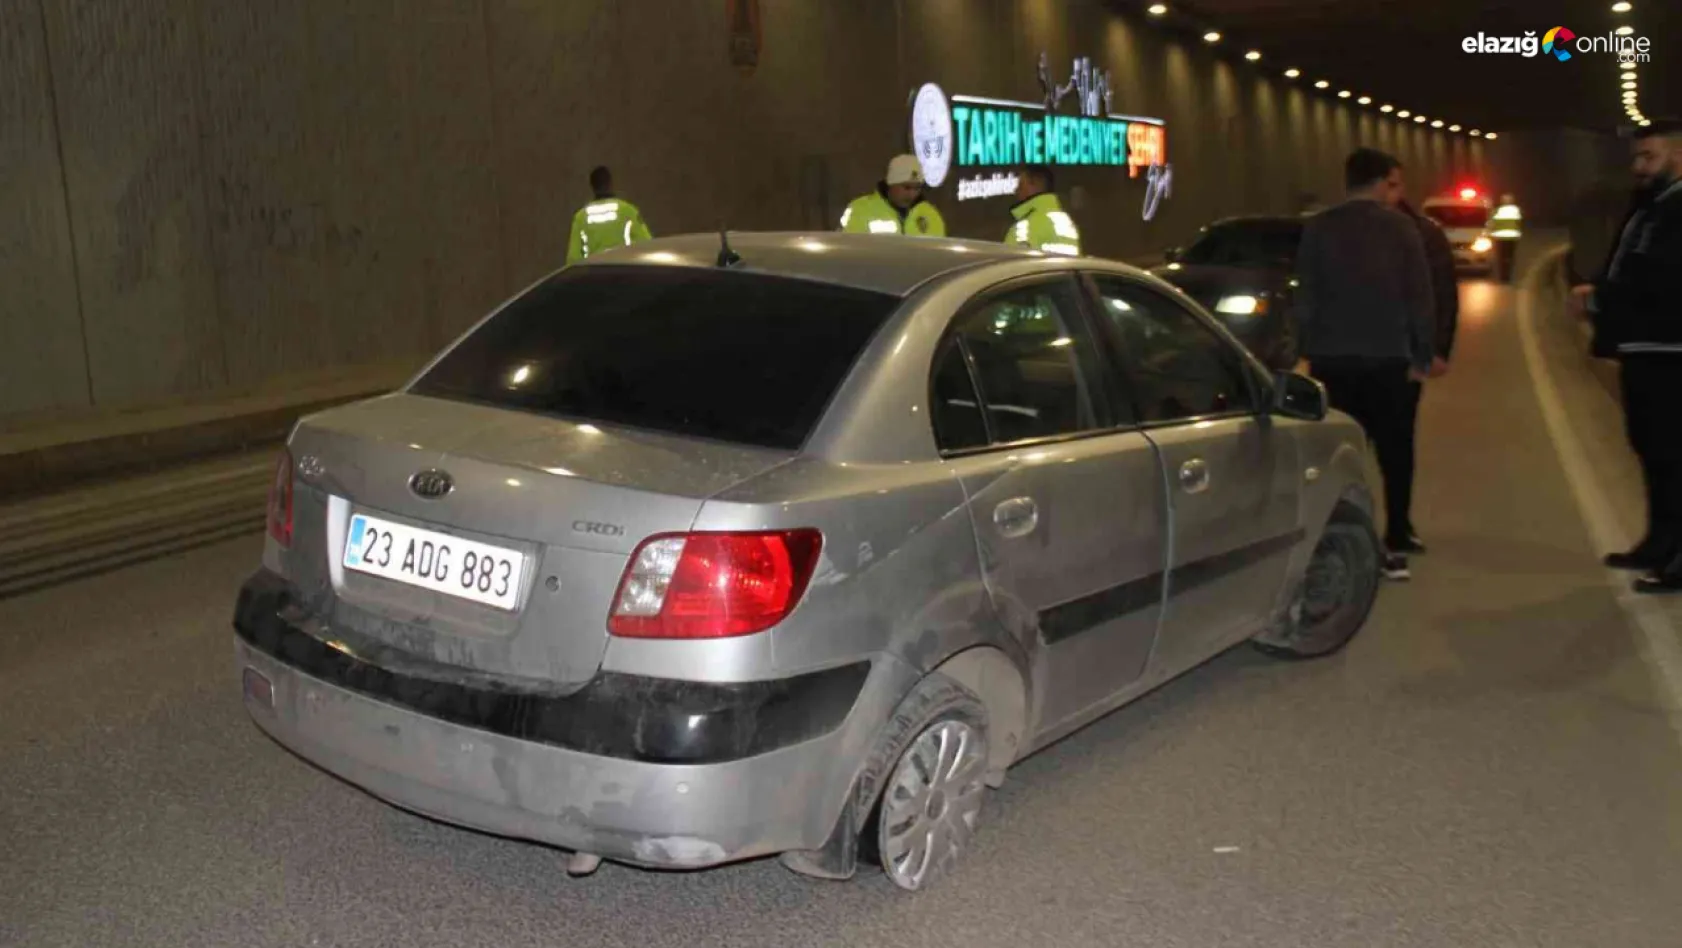 Elazığ'da kaza yapan sürücü olay yerinde kaçtı: 1 yaralı